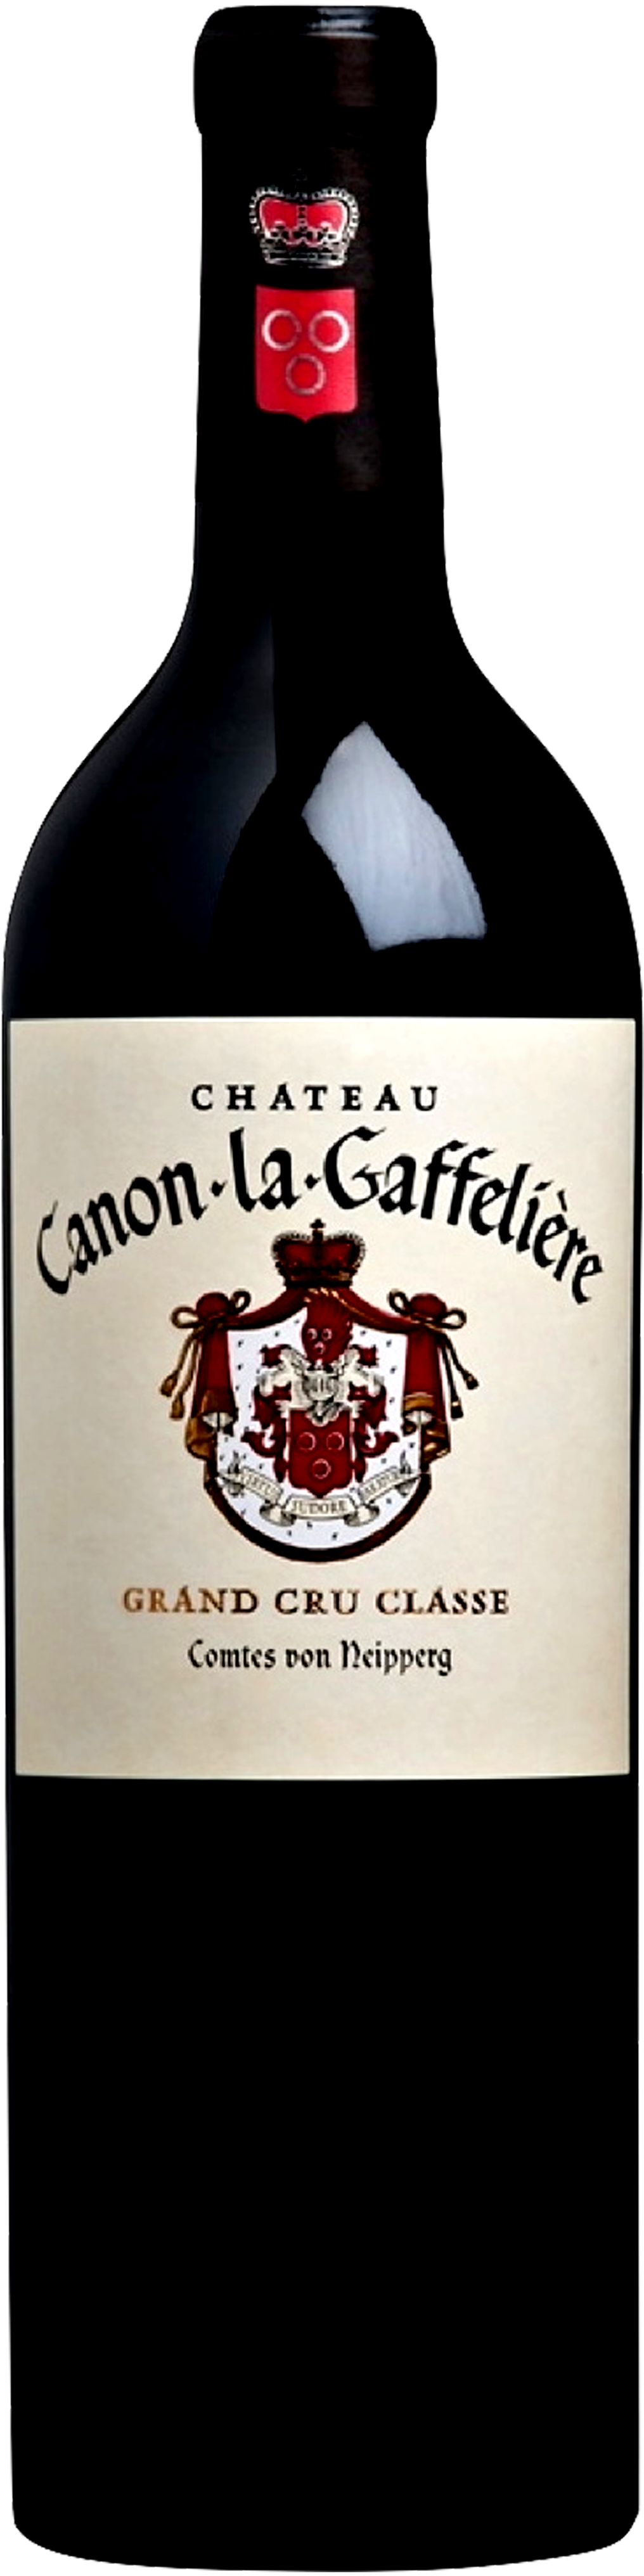 Bottle shot of 2009 Château Canon La Gaffelière, GCC St Emilion